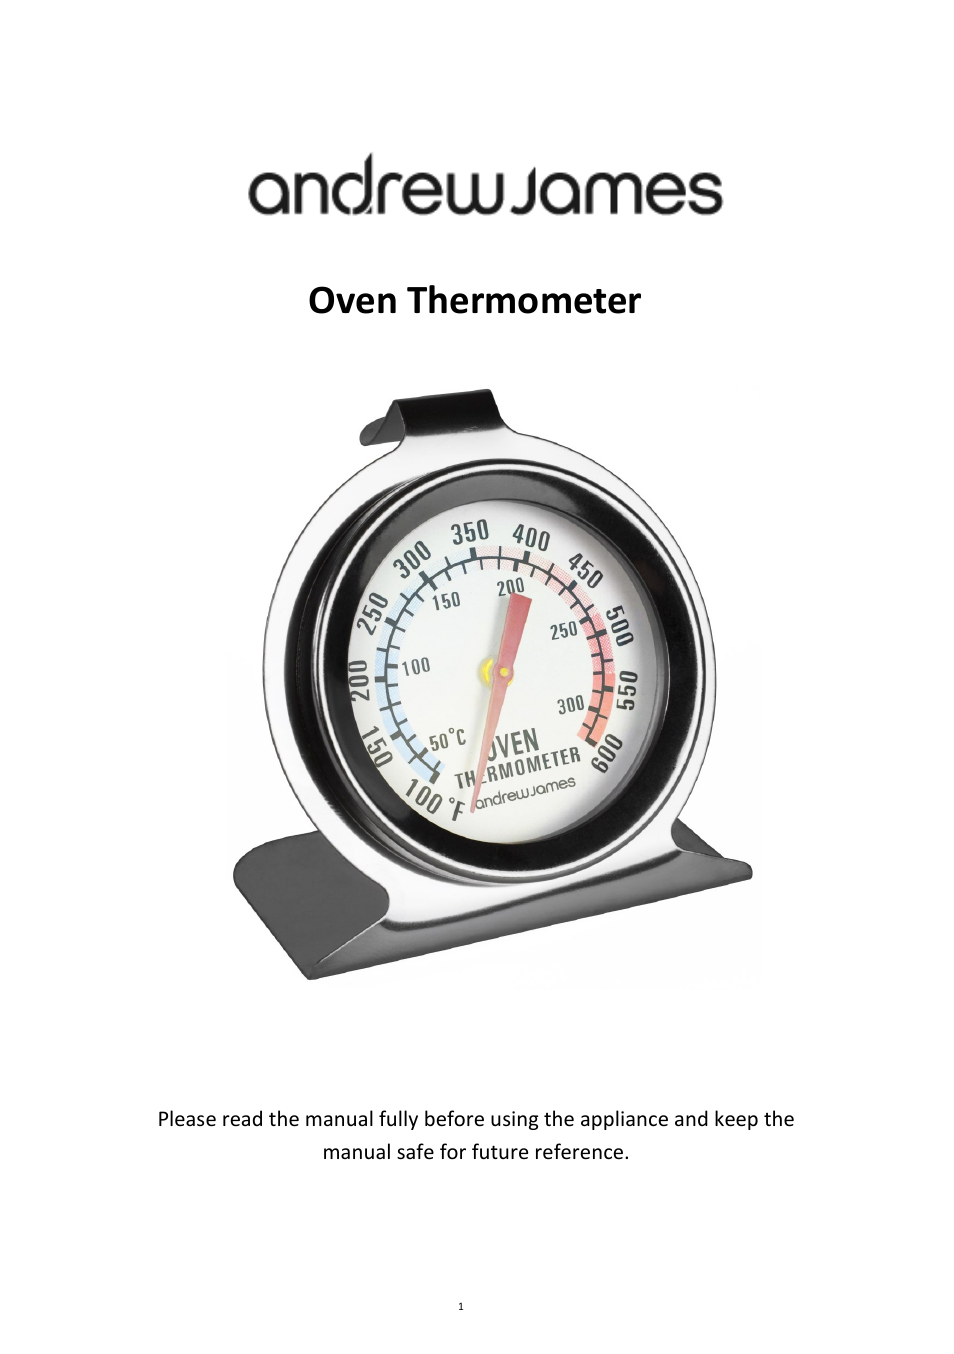 AJ000047 Oven Thermometer